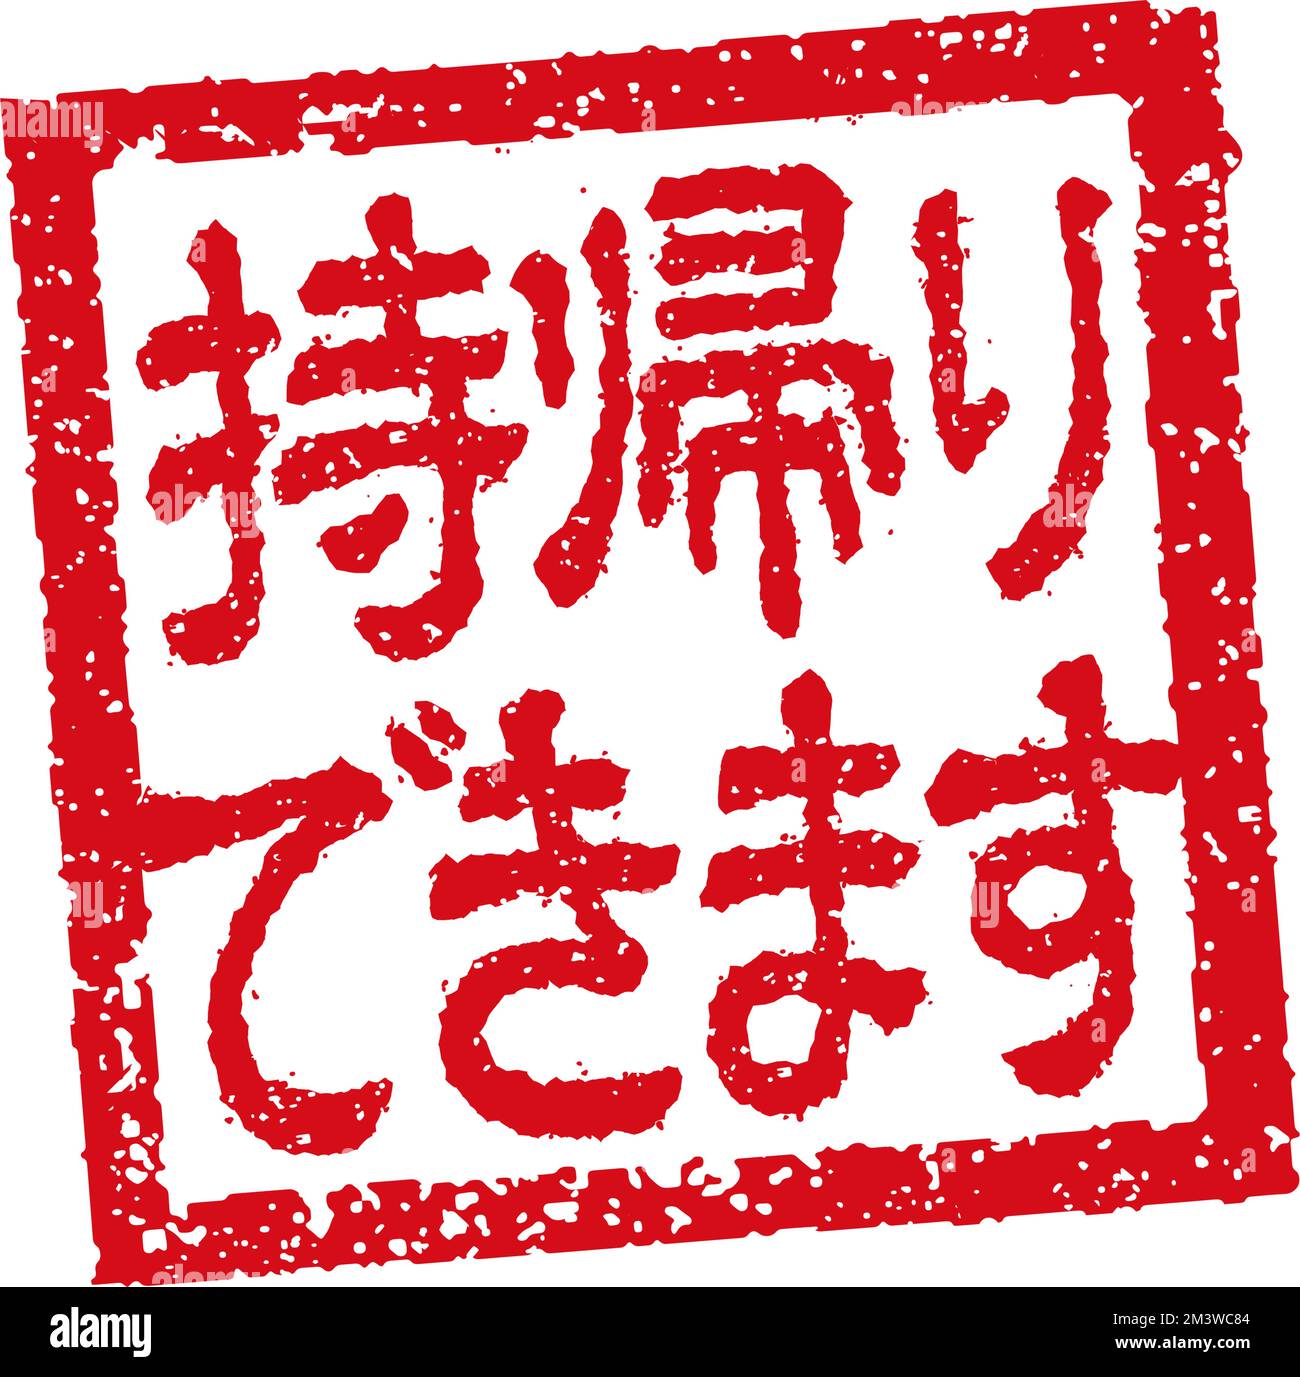 Abbildung von Gummistempeln, die häufig in japanischen Restaurants und Pubs verwendet wird. Usw. | Essen zum Mitnehmen verfügbar Stock Vektor